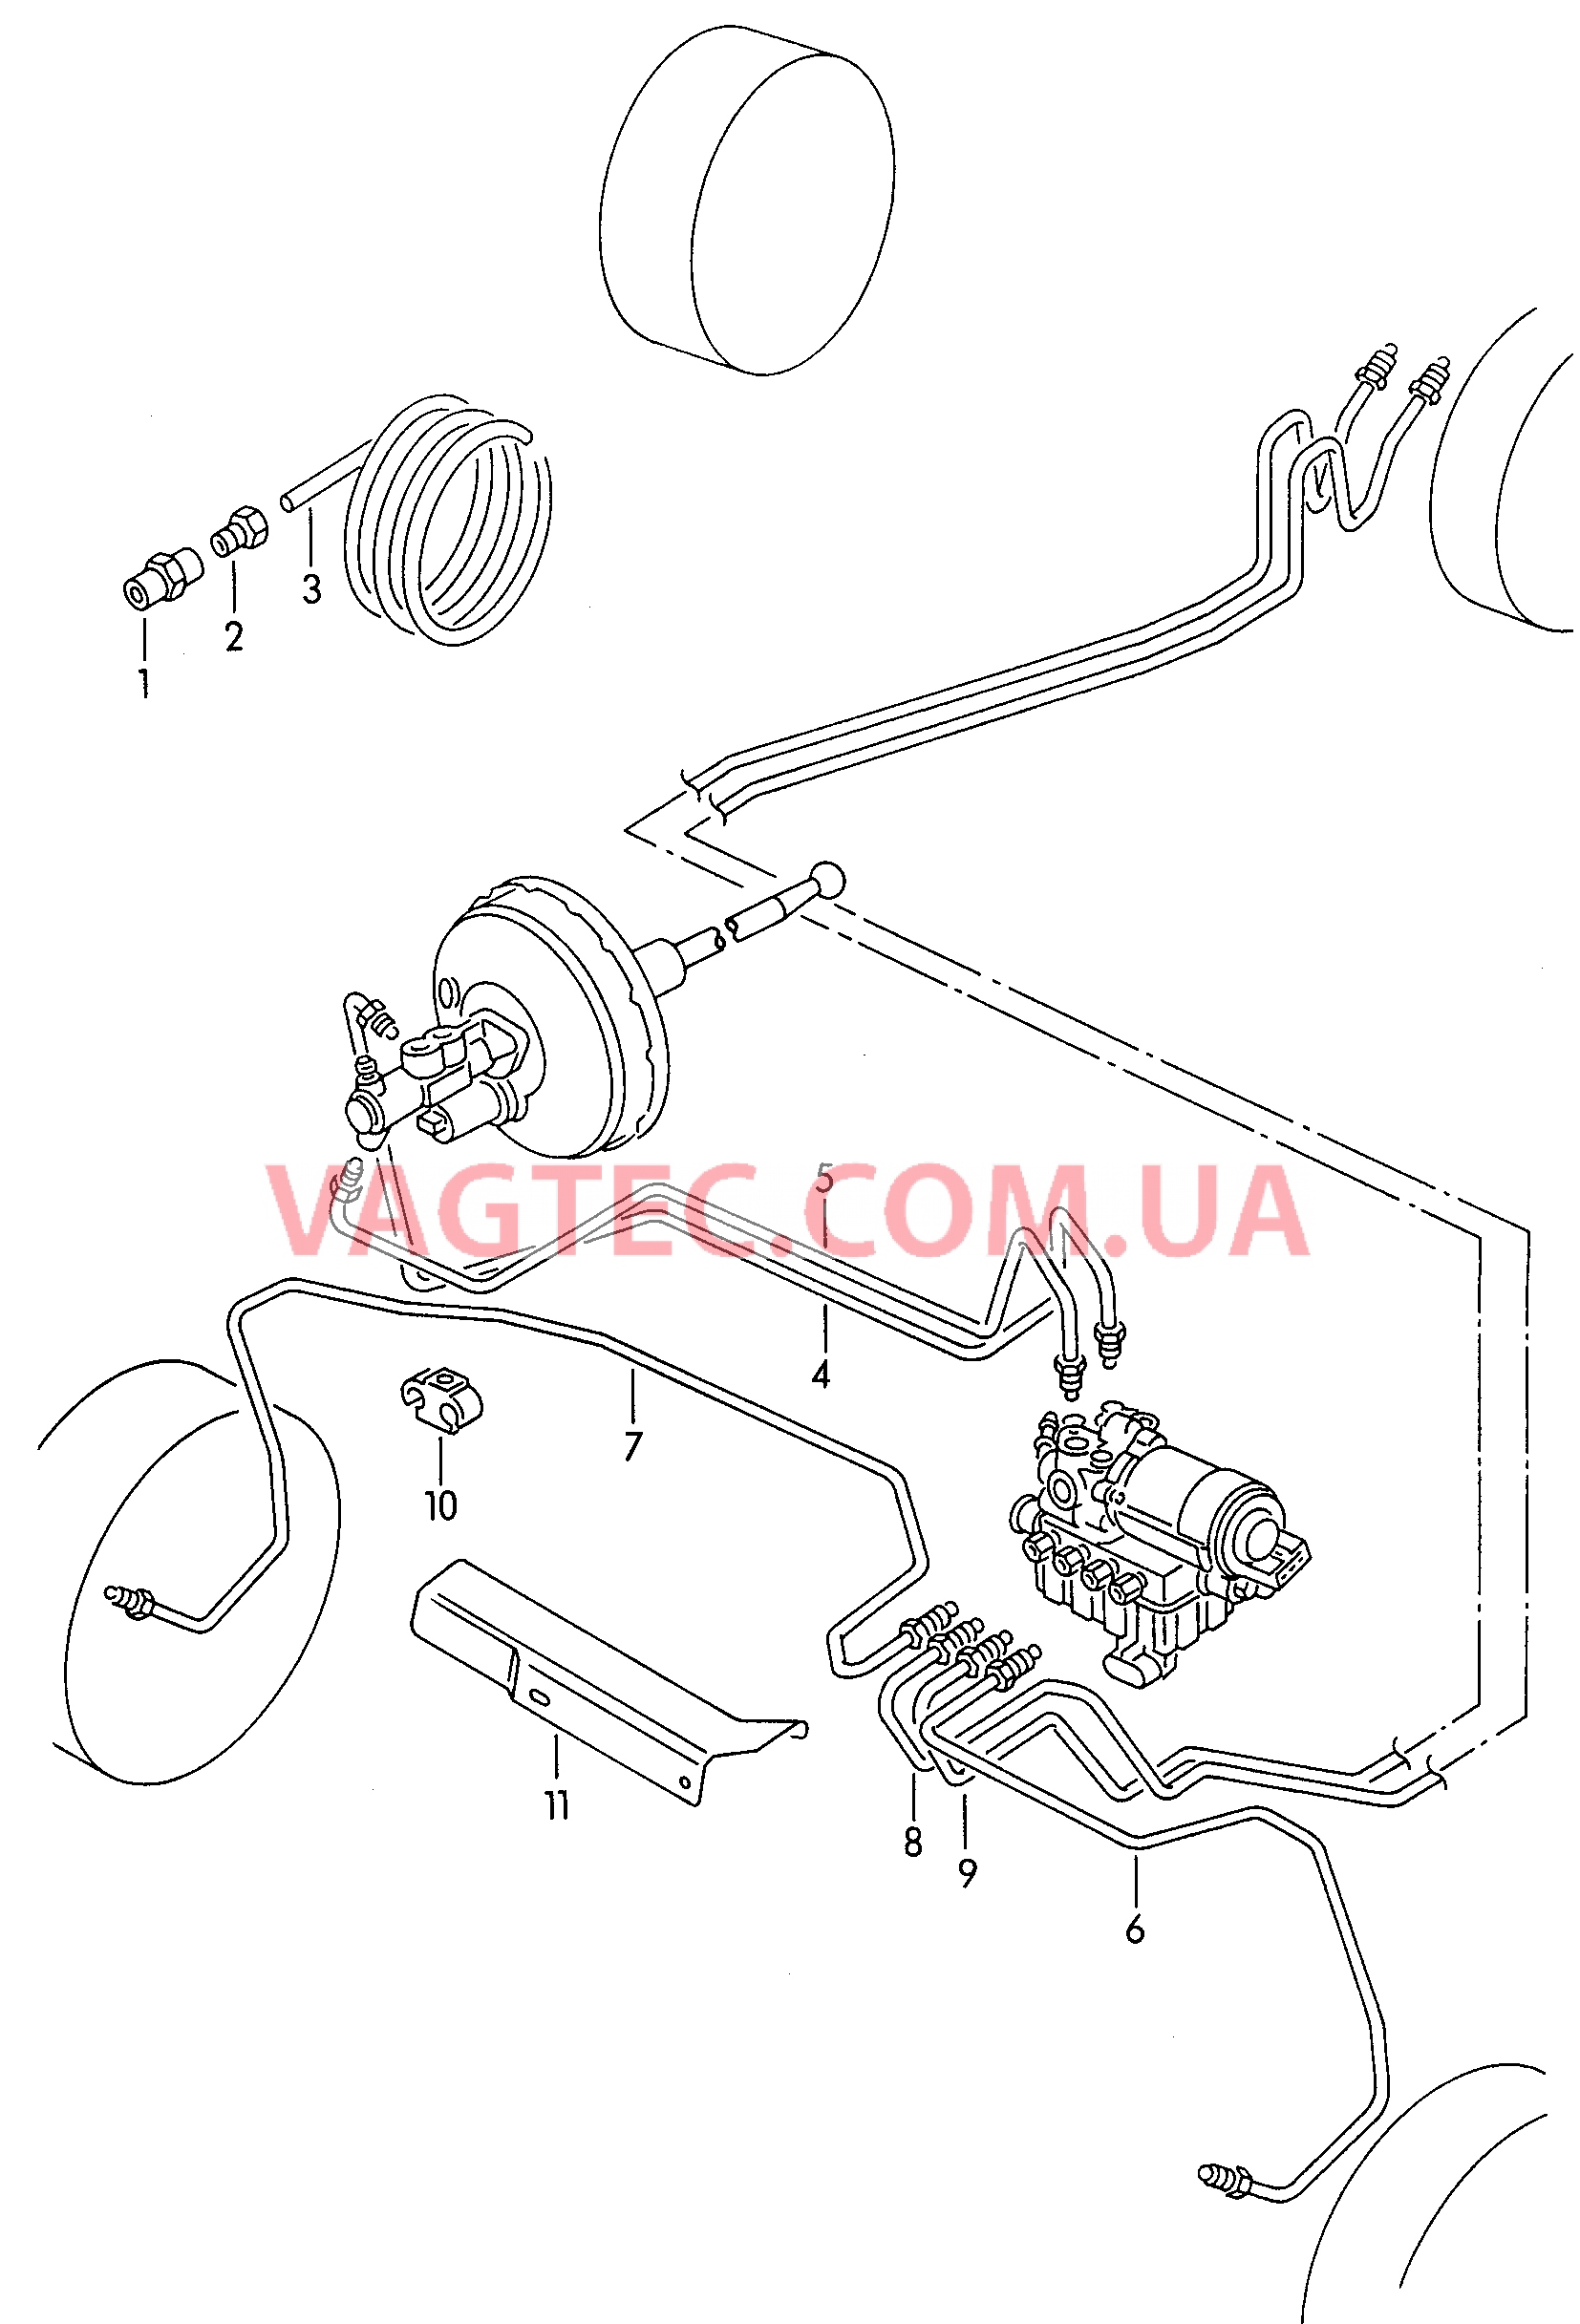 Тормозная трубка для а/м с антиблокировочной системой тормозов        -ABS-  для SEAT Ibiza 2001